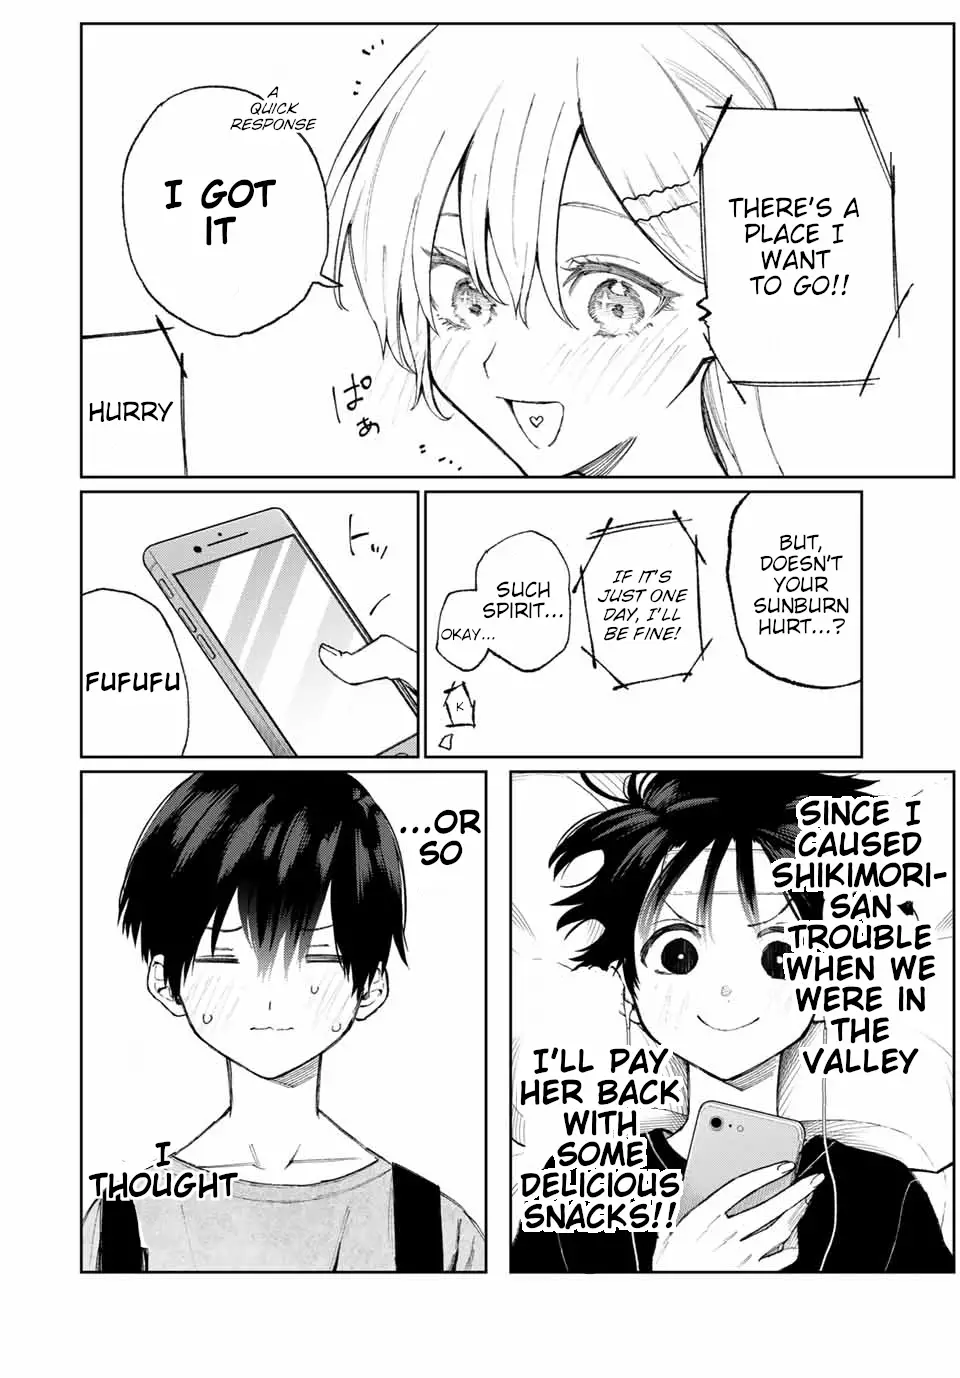 Shikimori's Not Just A Cutie - 32 page 3